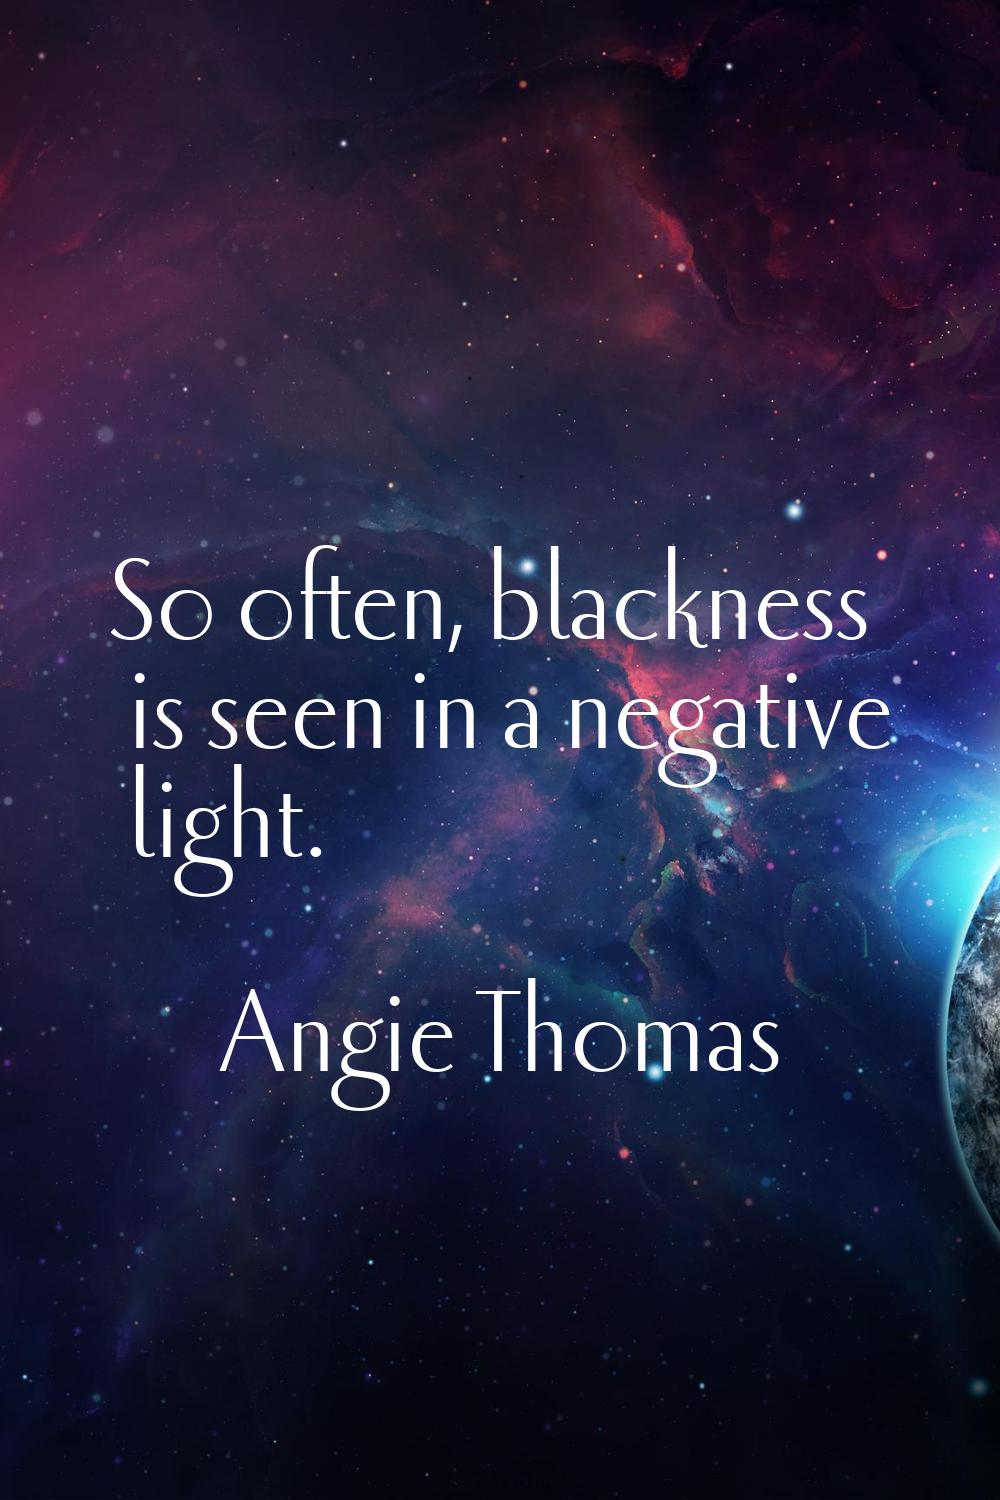 So often, blackness is seen in a negative light.